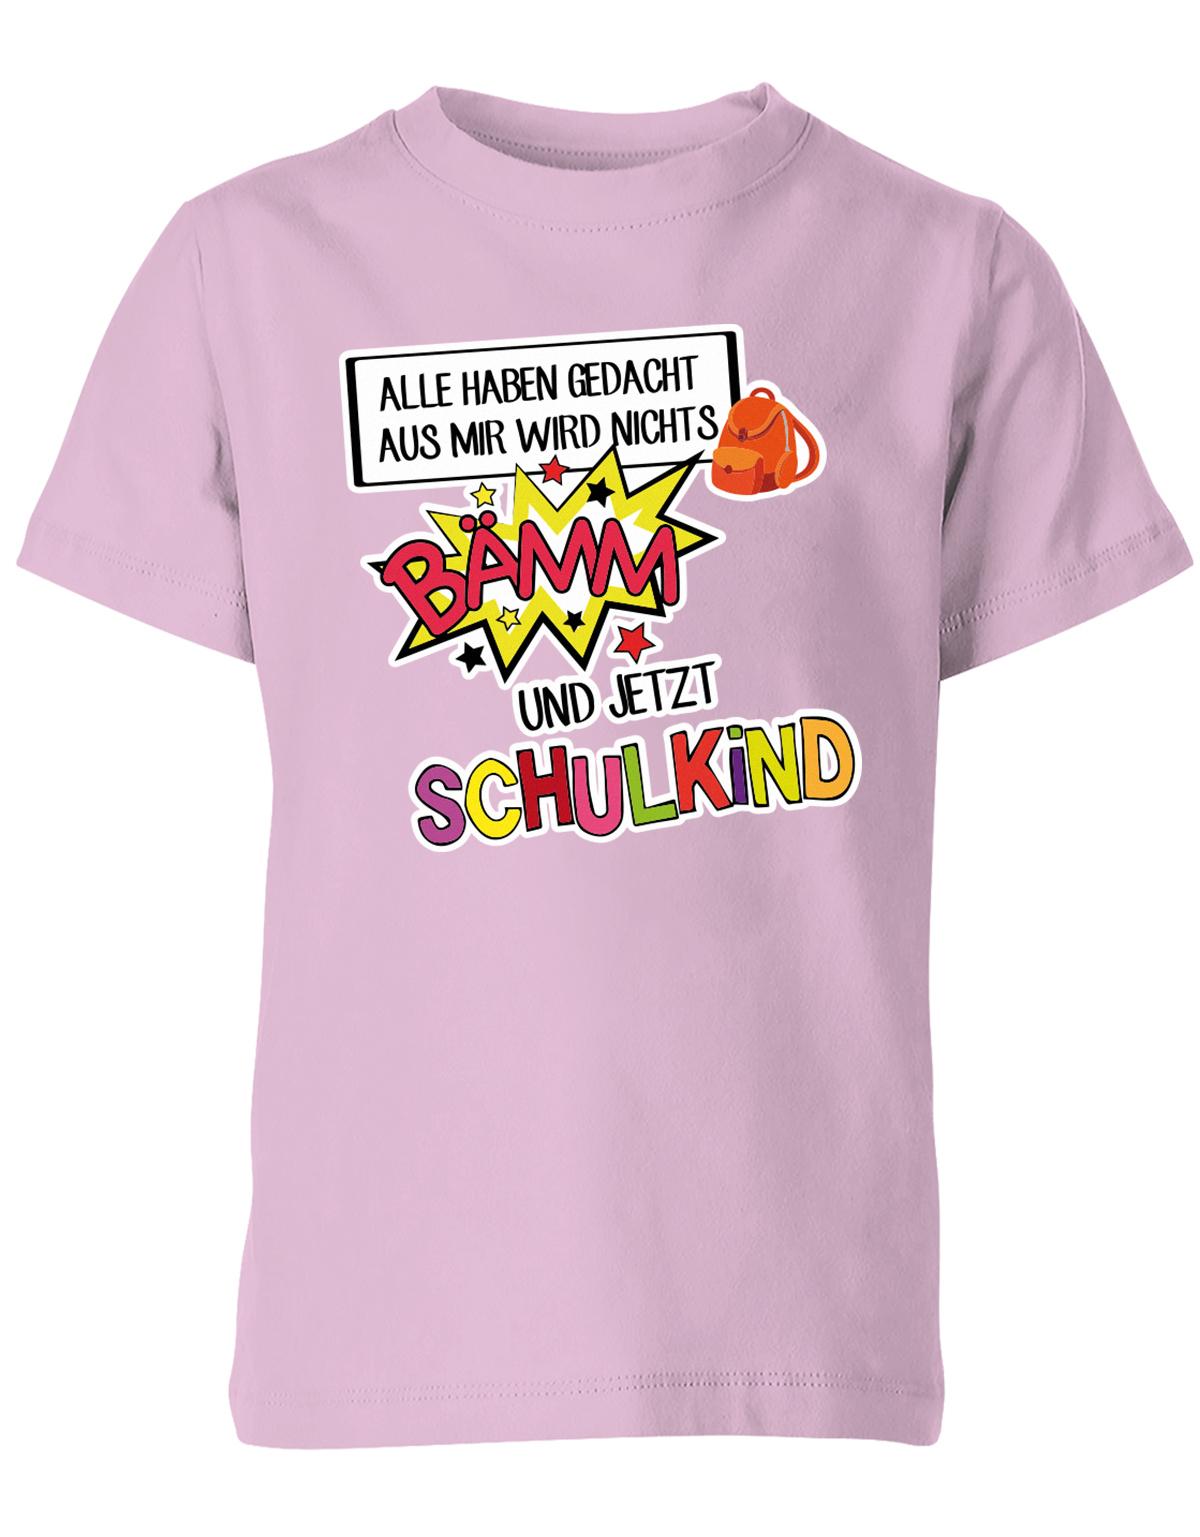 Alle haben gedacht aus mir wird nichts - bämm Schulkind - Einschulung T-Shirt Rosa